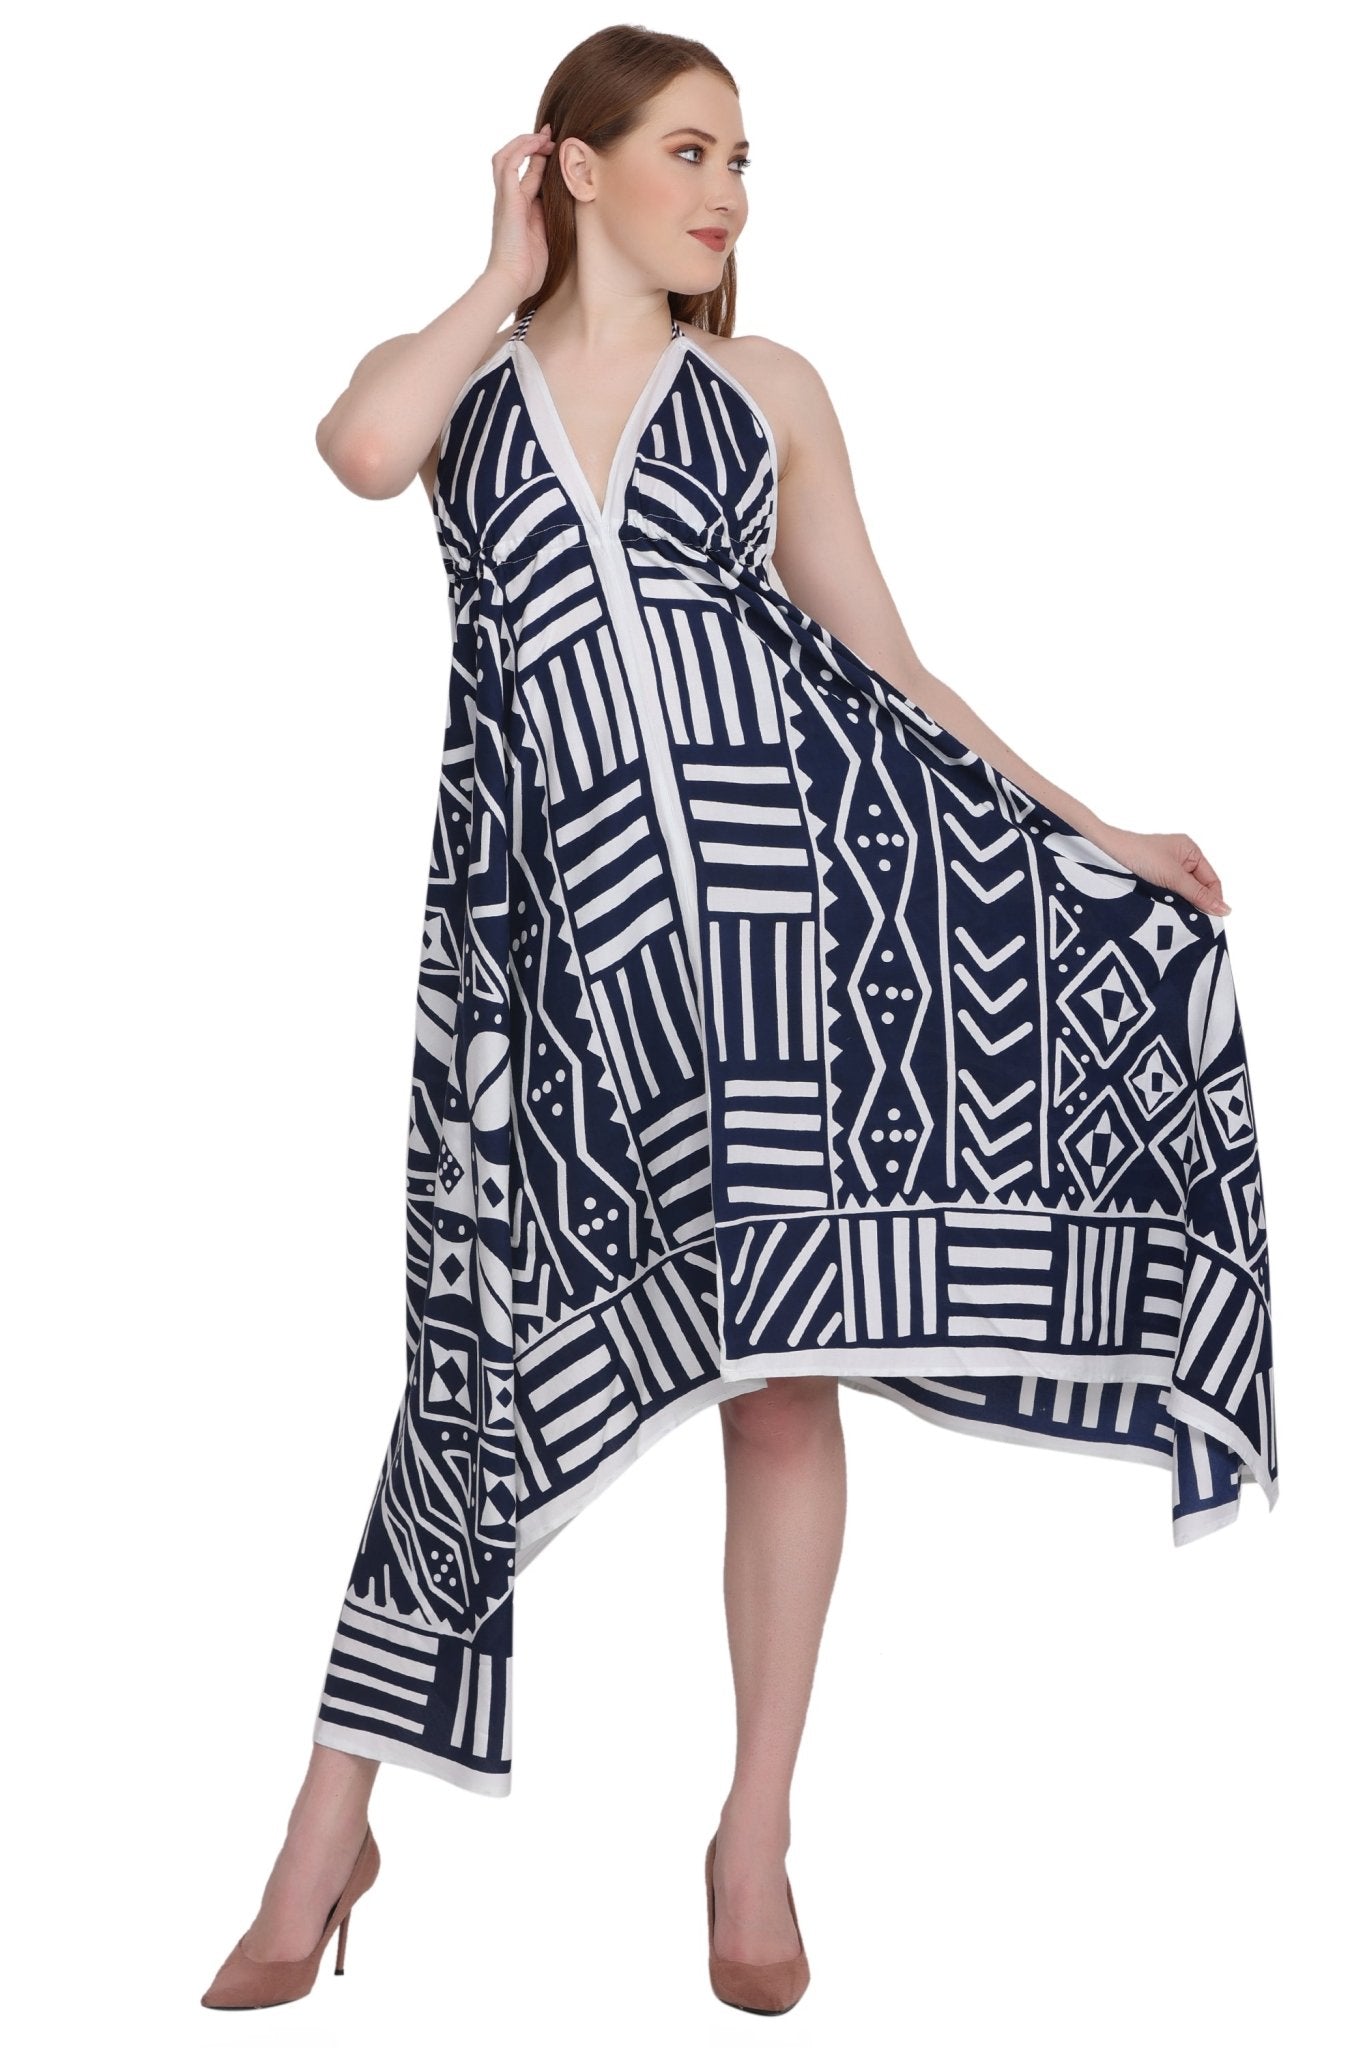 Geometric Print Scarf Dress 1951 - Advance Apparels Inc